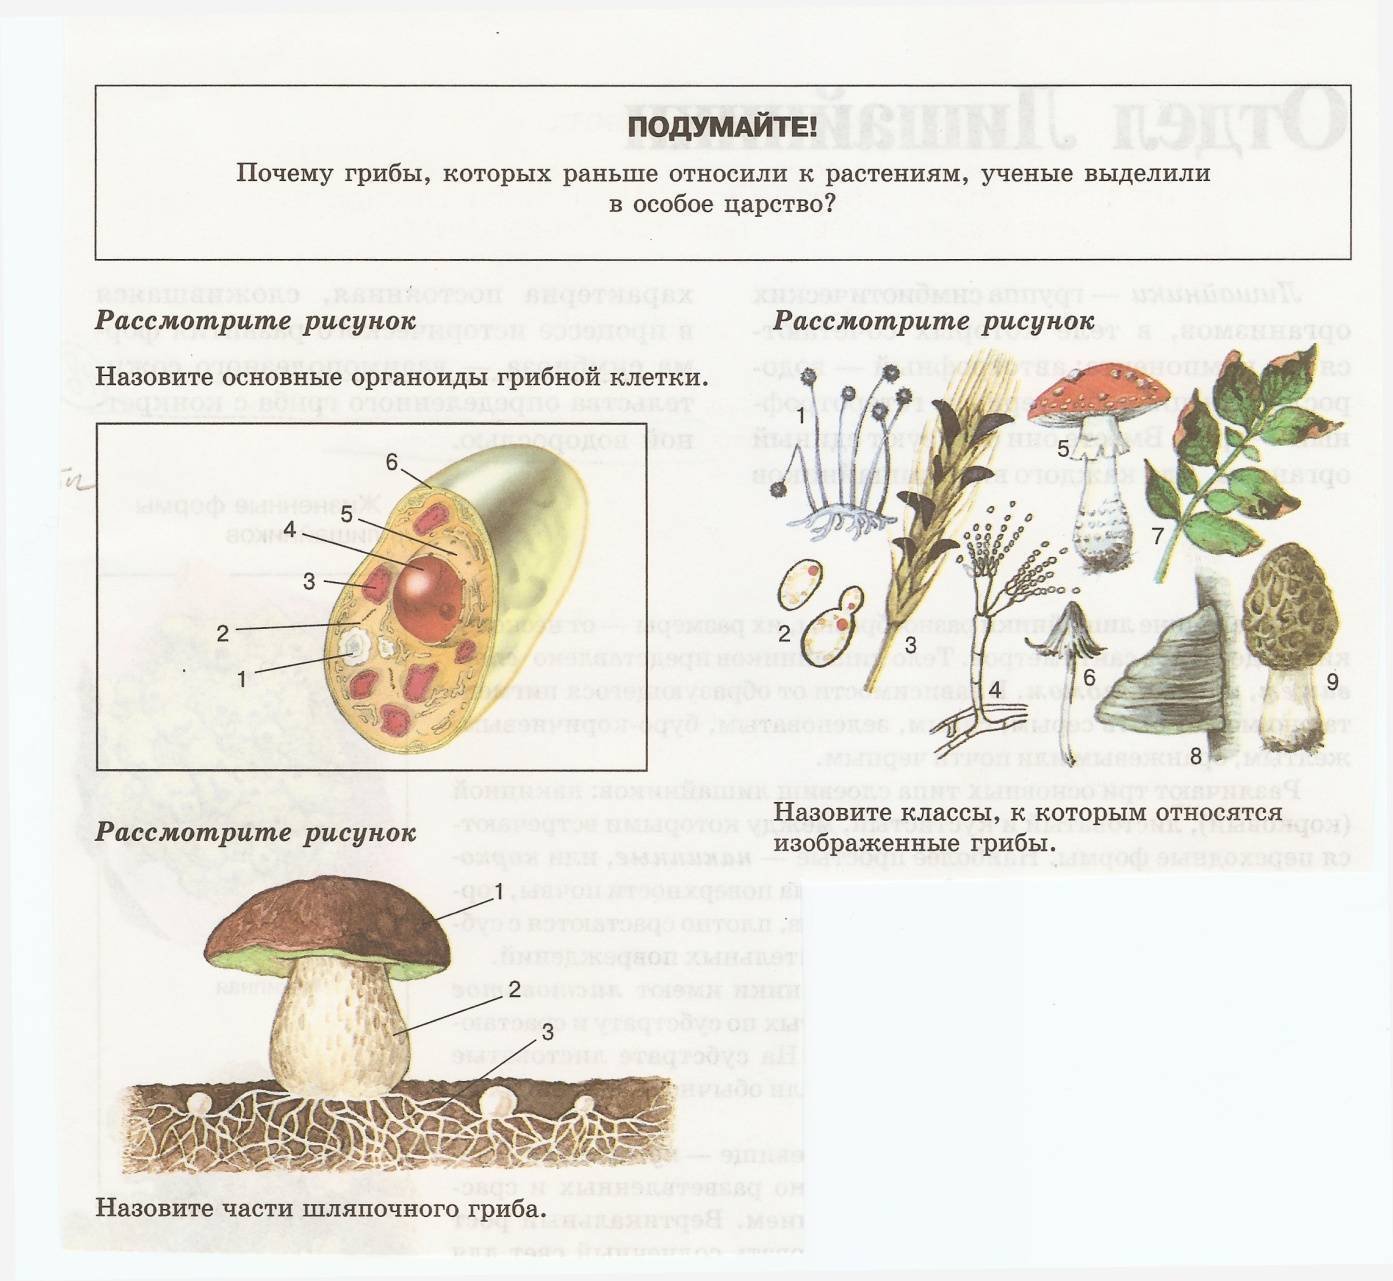 Грибы биология огэ. Шляпочные грибы строение размножение. Царство грибов строение жизнедеятельность размножение. Царство грибов 5 класс биология класс. Строение гриба 7 класс биология рисунок.